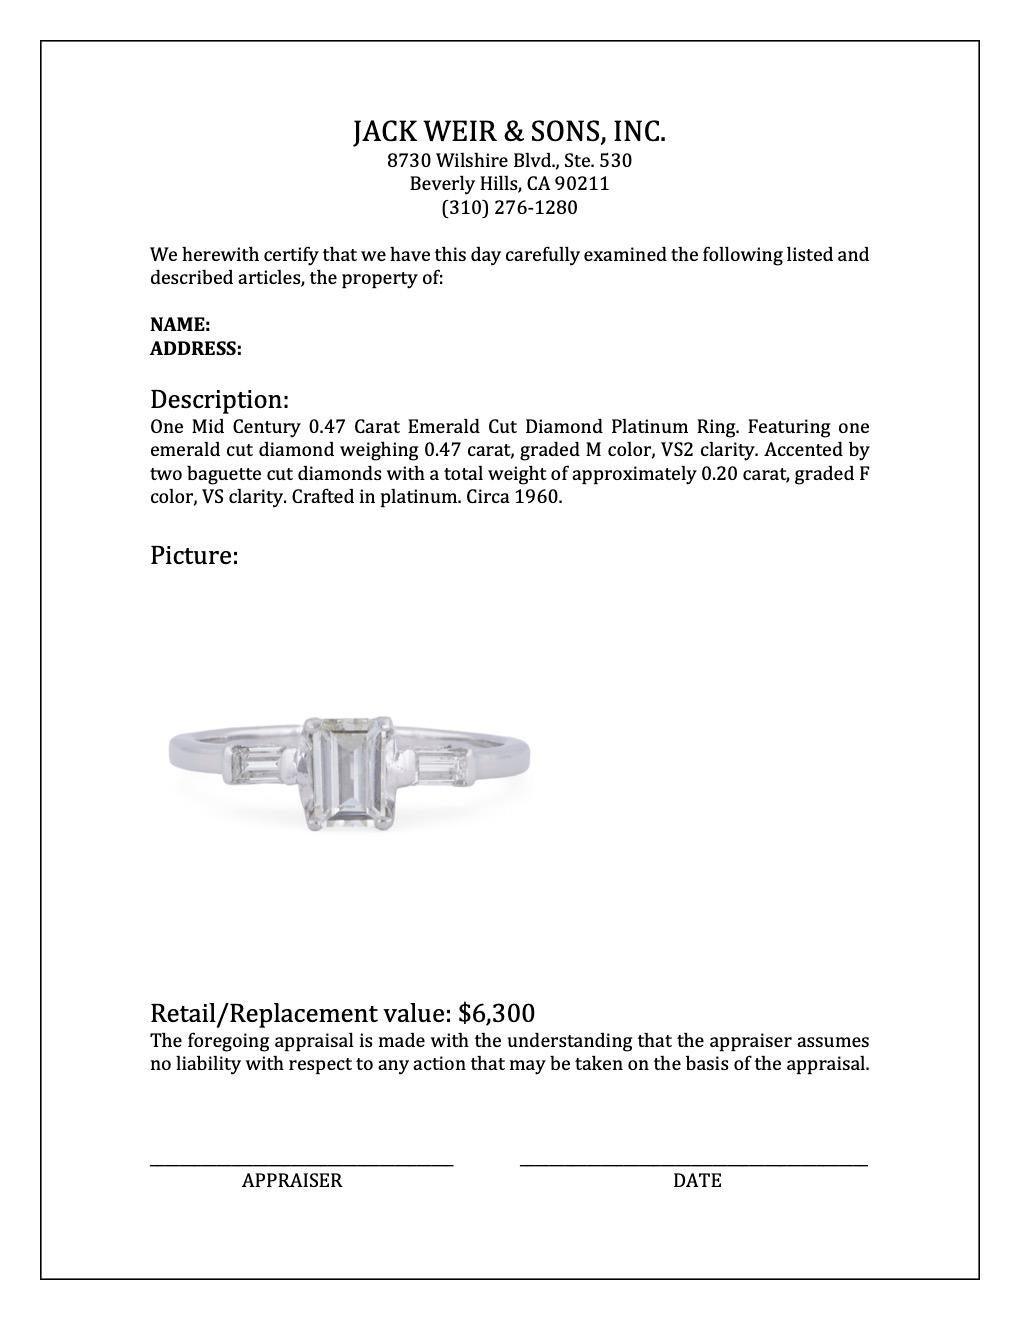 Mid-Century 0.47 Carat Emerald Cut Diamond Platinum Ring For Sale 2